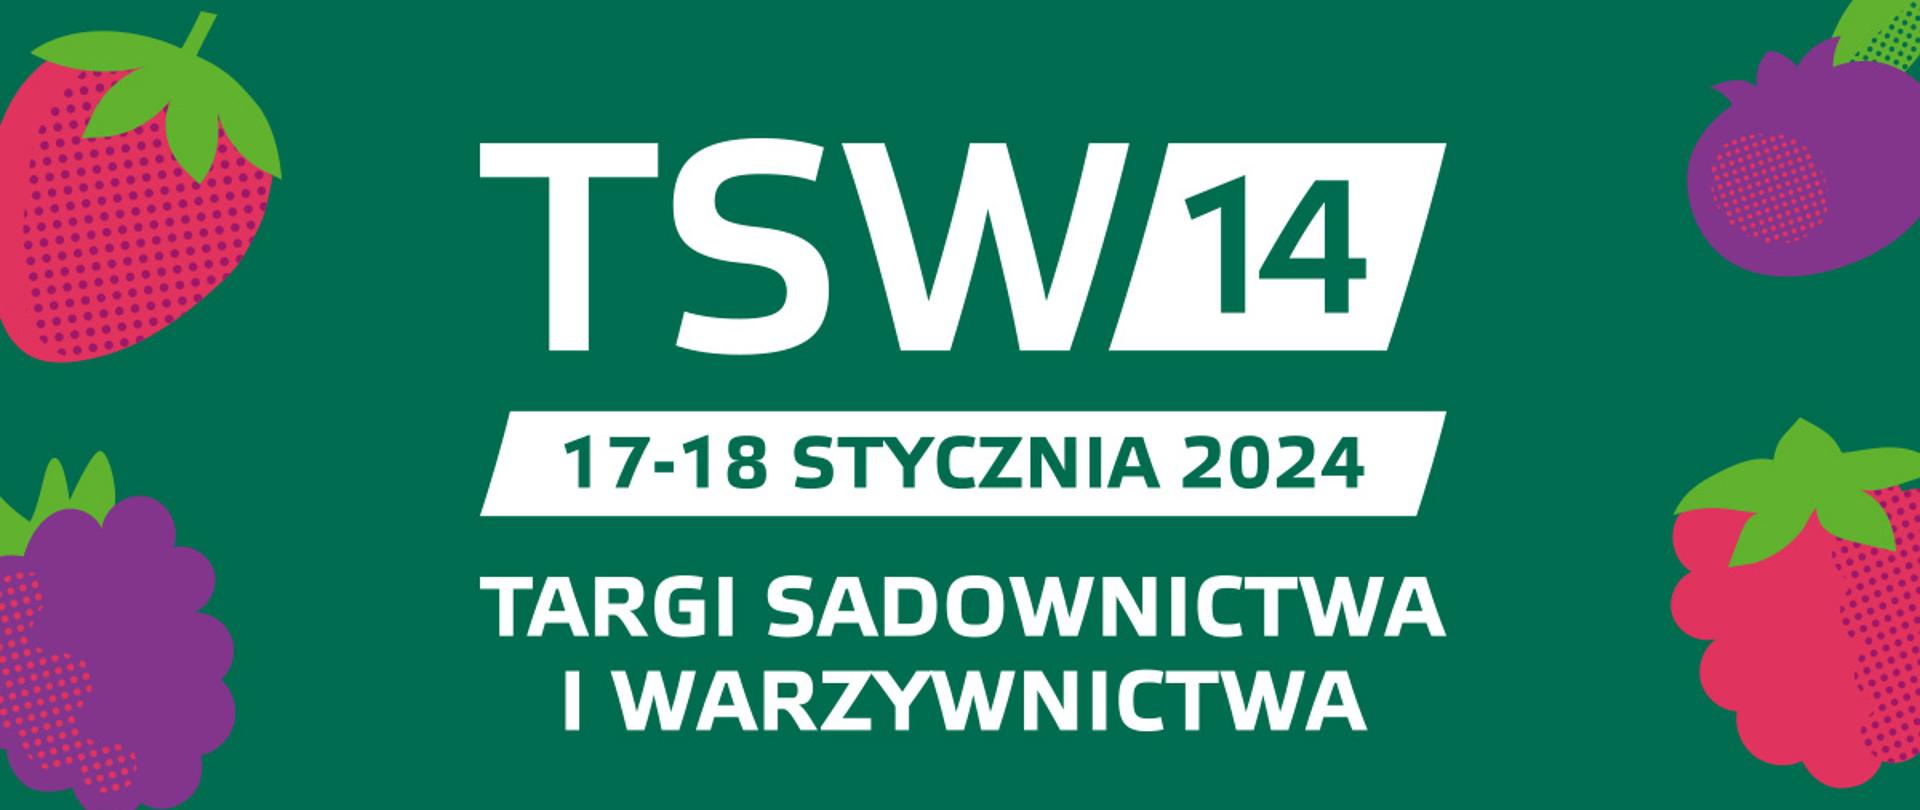 grafika przedstawia na zielonym tle biały napis TSW 14, 17-18 stycznia 2024 TARGI SADOWNICTWA I WARZYWNICTWA oraz dane adresowe i strony internetowej. Po bokach i u góry grafiki owoców